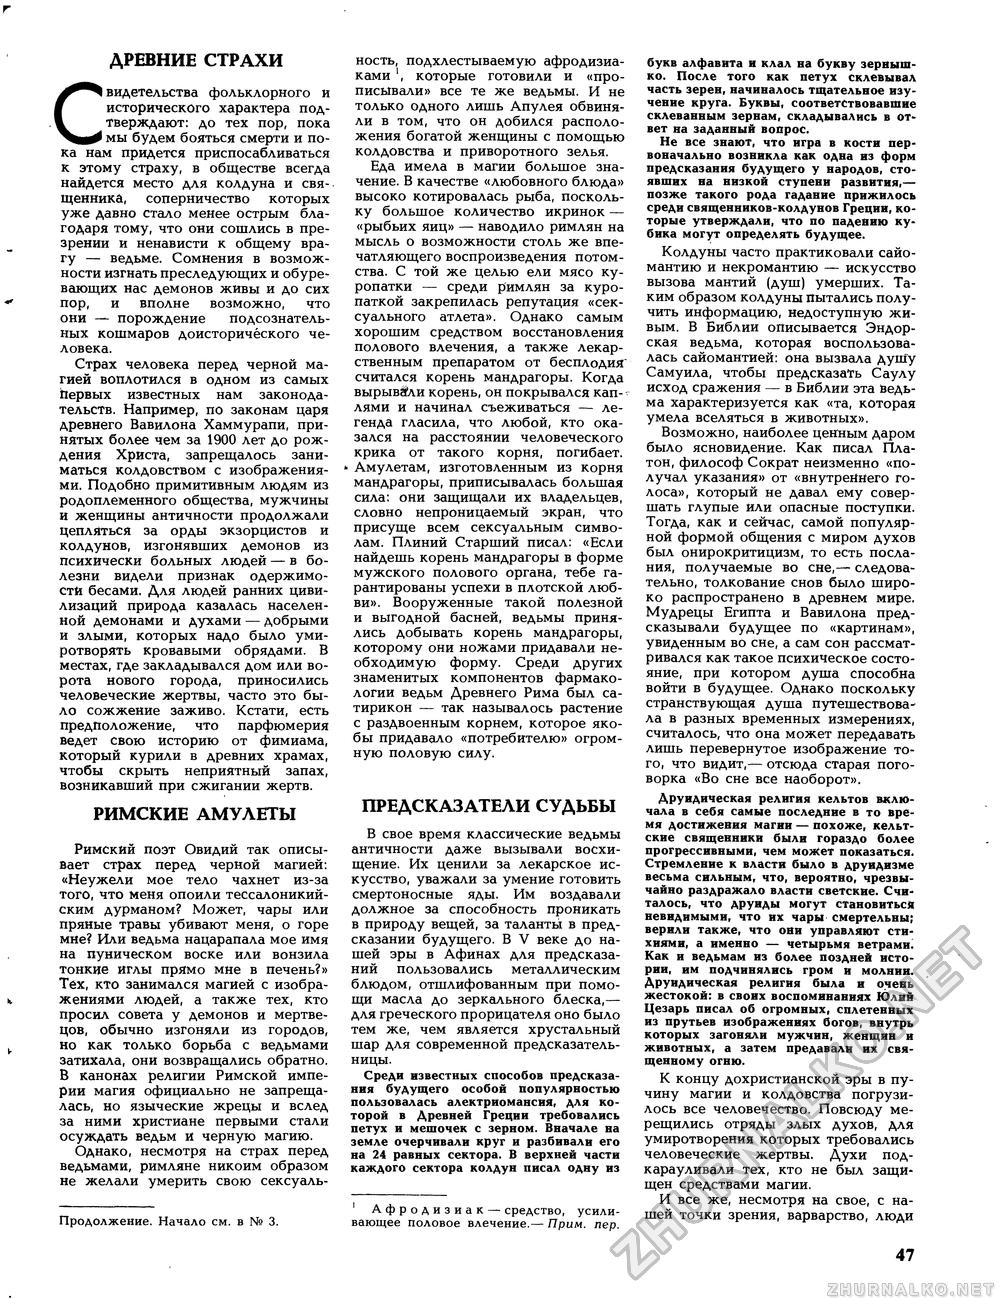 Вокруг света 1991-04, страница 49